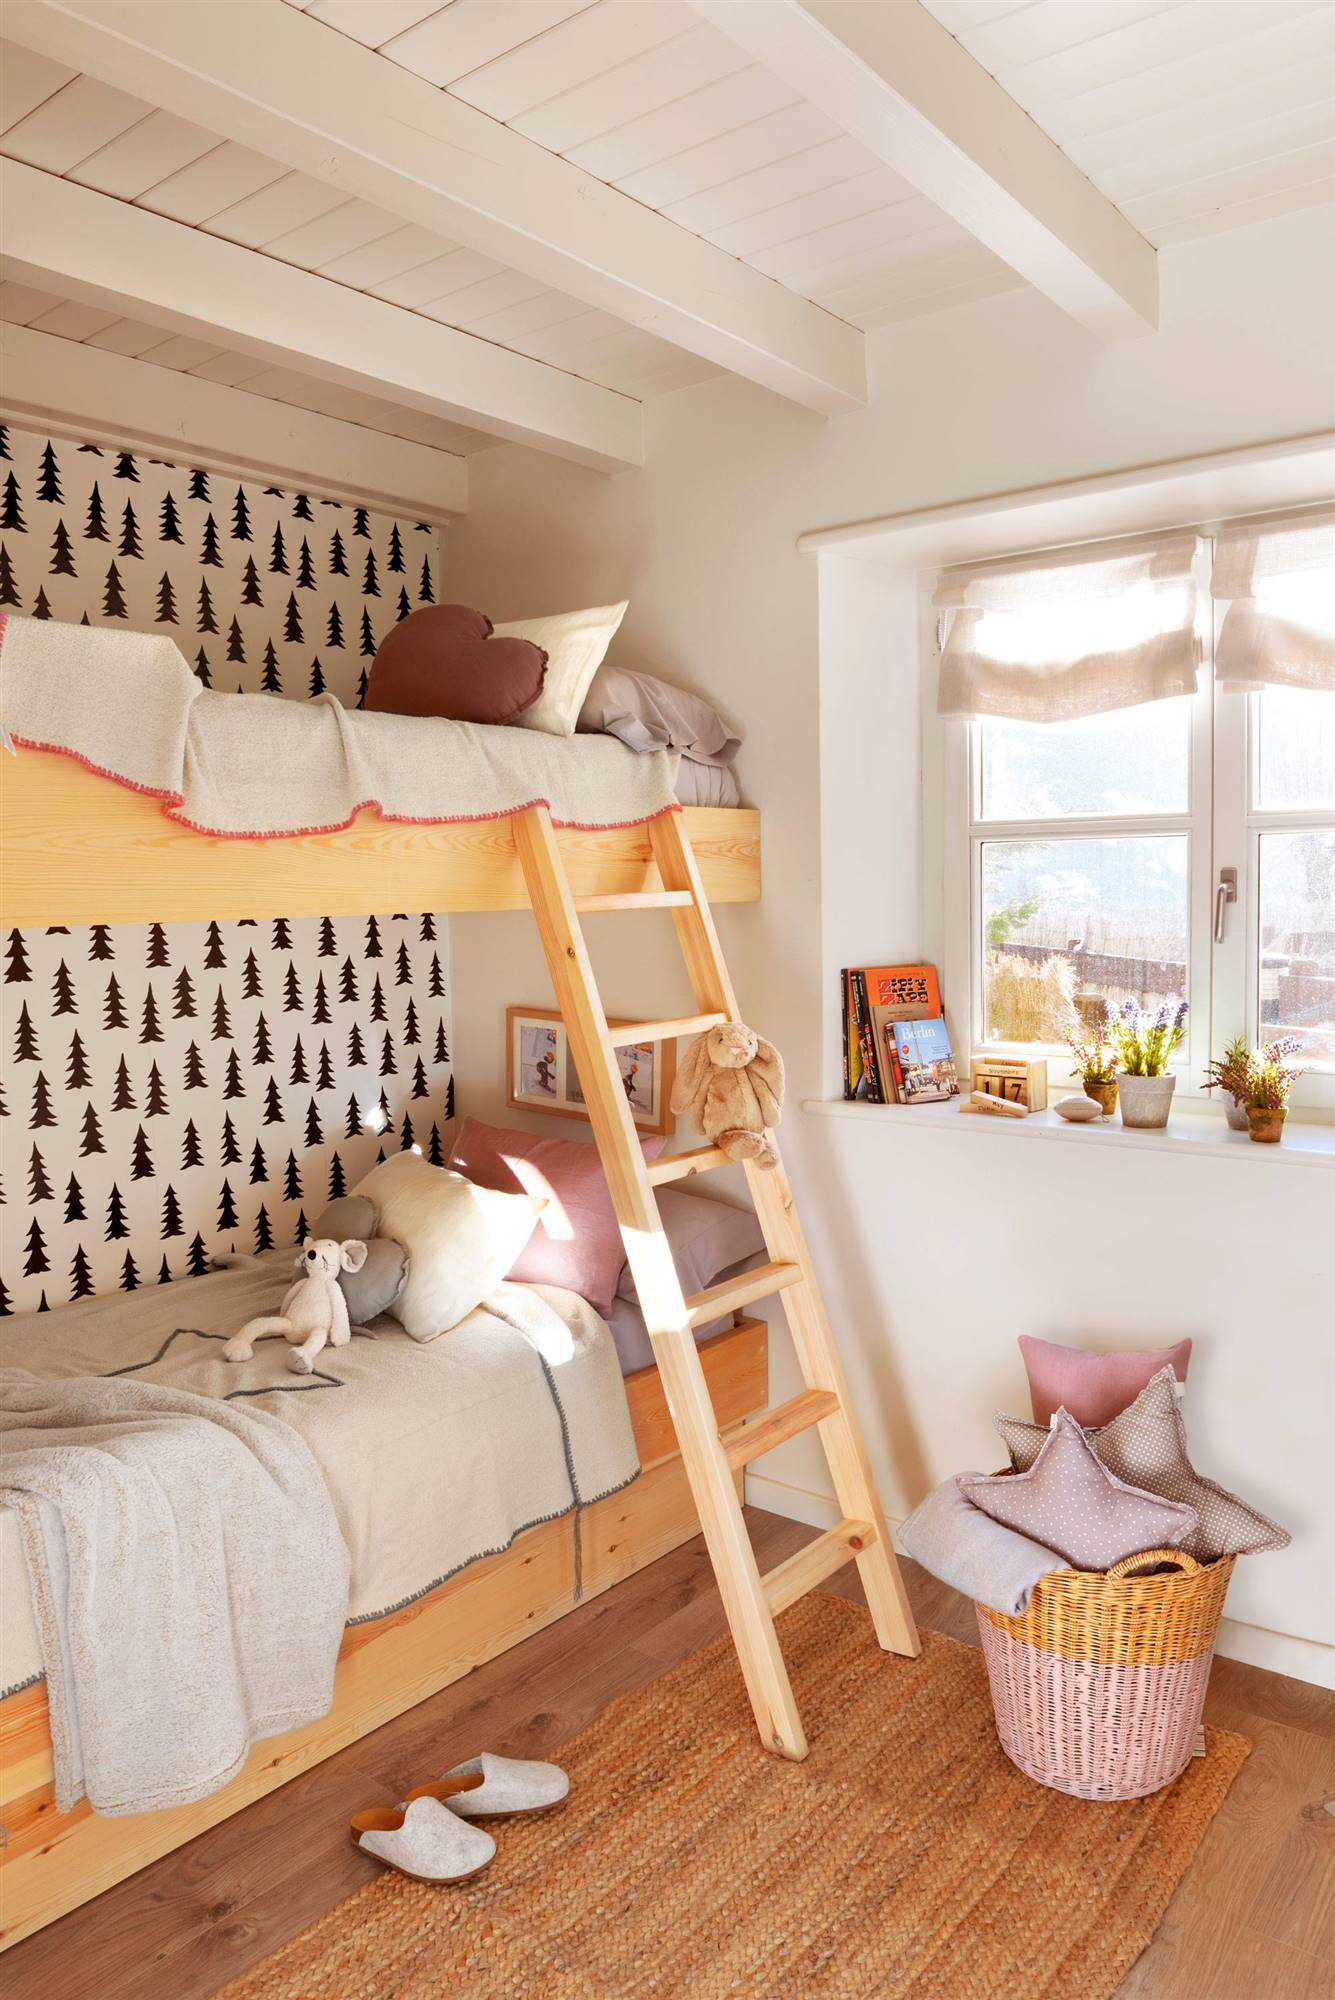 Habitación infantil de estilo nórdico con dos literas y papel pintado con abetos negros